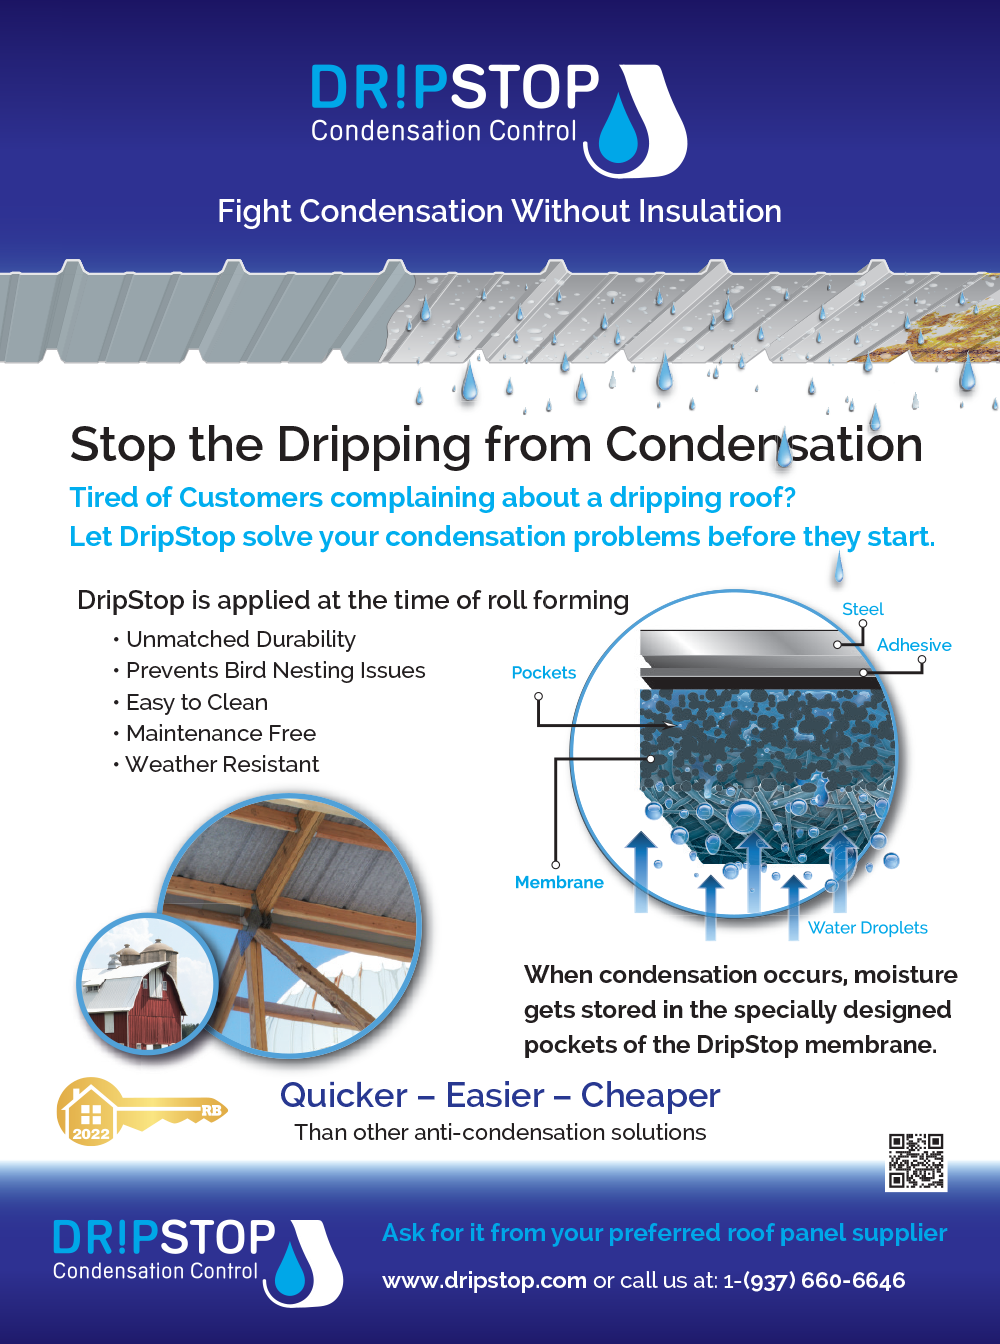 DripStop Condensation Control